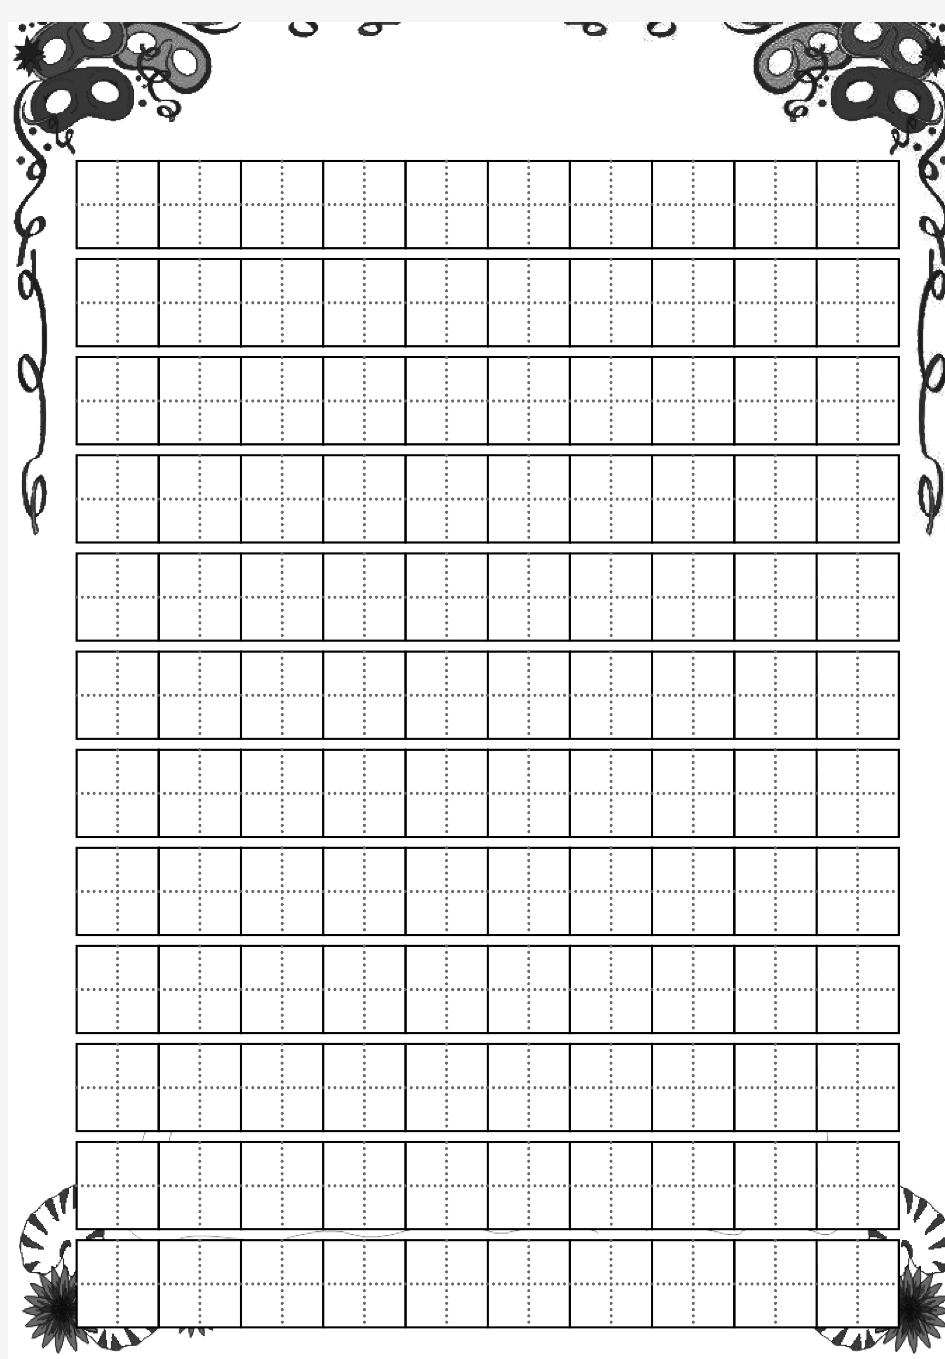 硬笔书法练习田字格-A4打印版